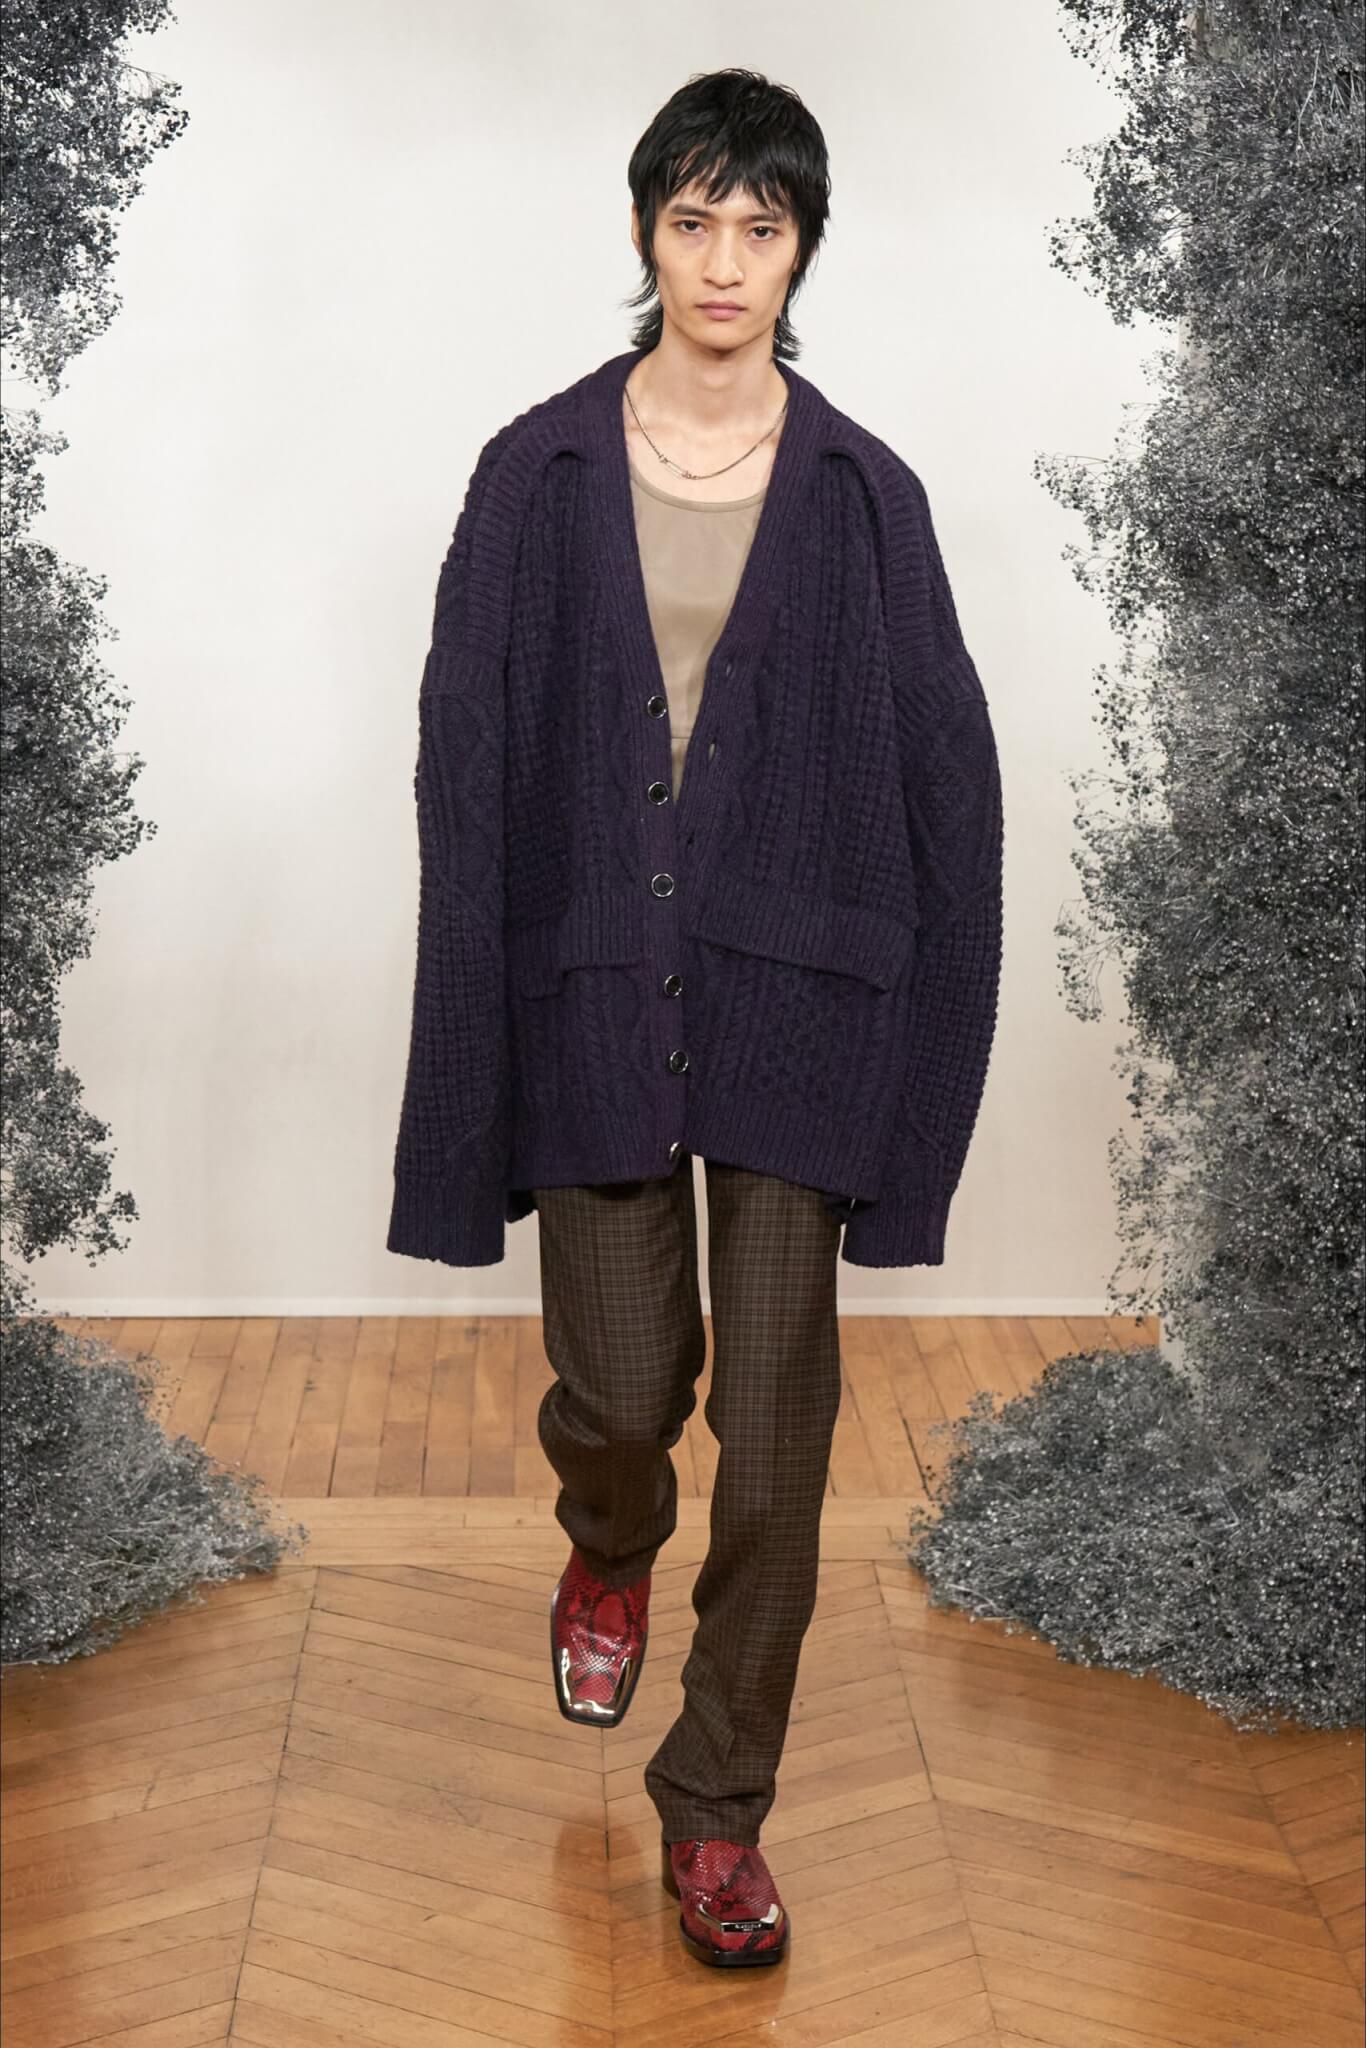 Il Cardigan è il Must Have Moda Uomo dell'Inverno 2020 - Givenchy 1 scaled - Gay.it